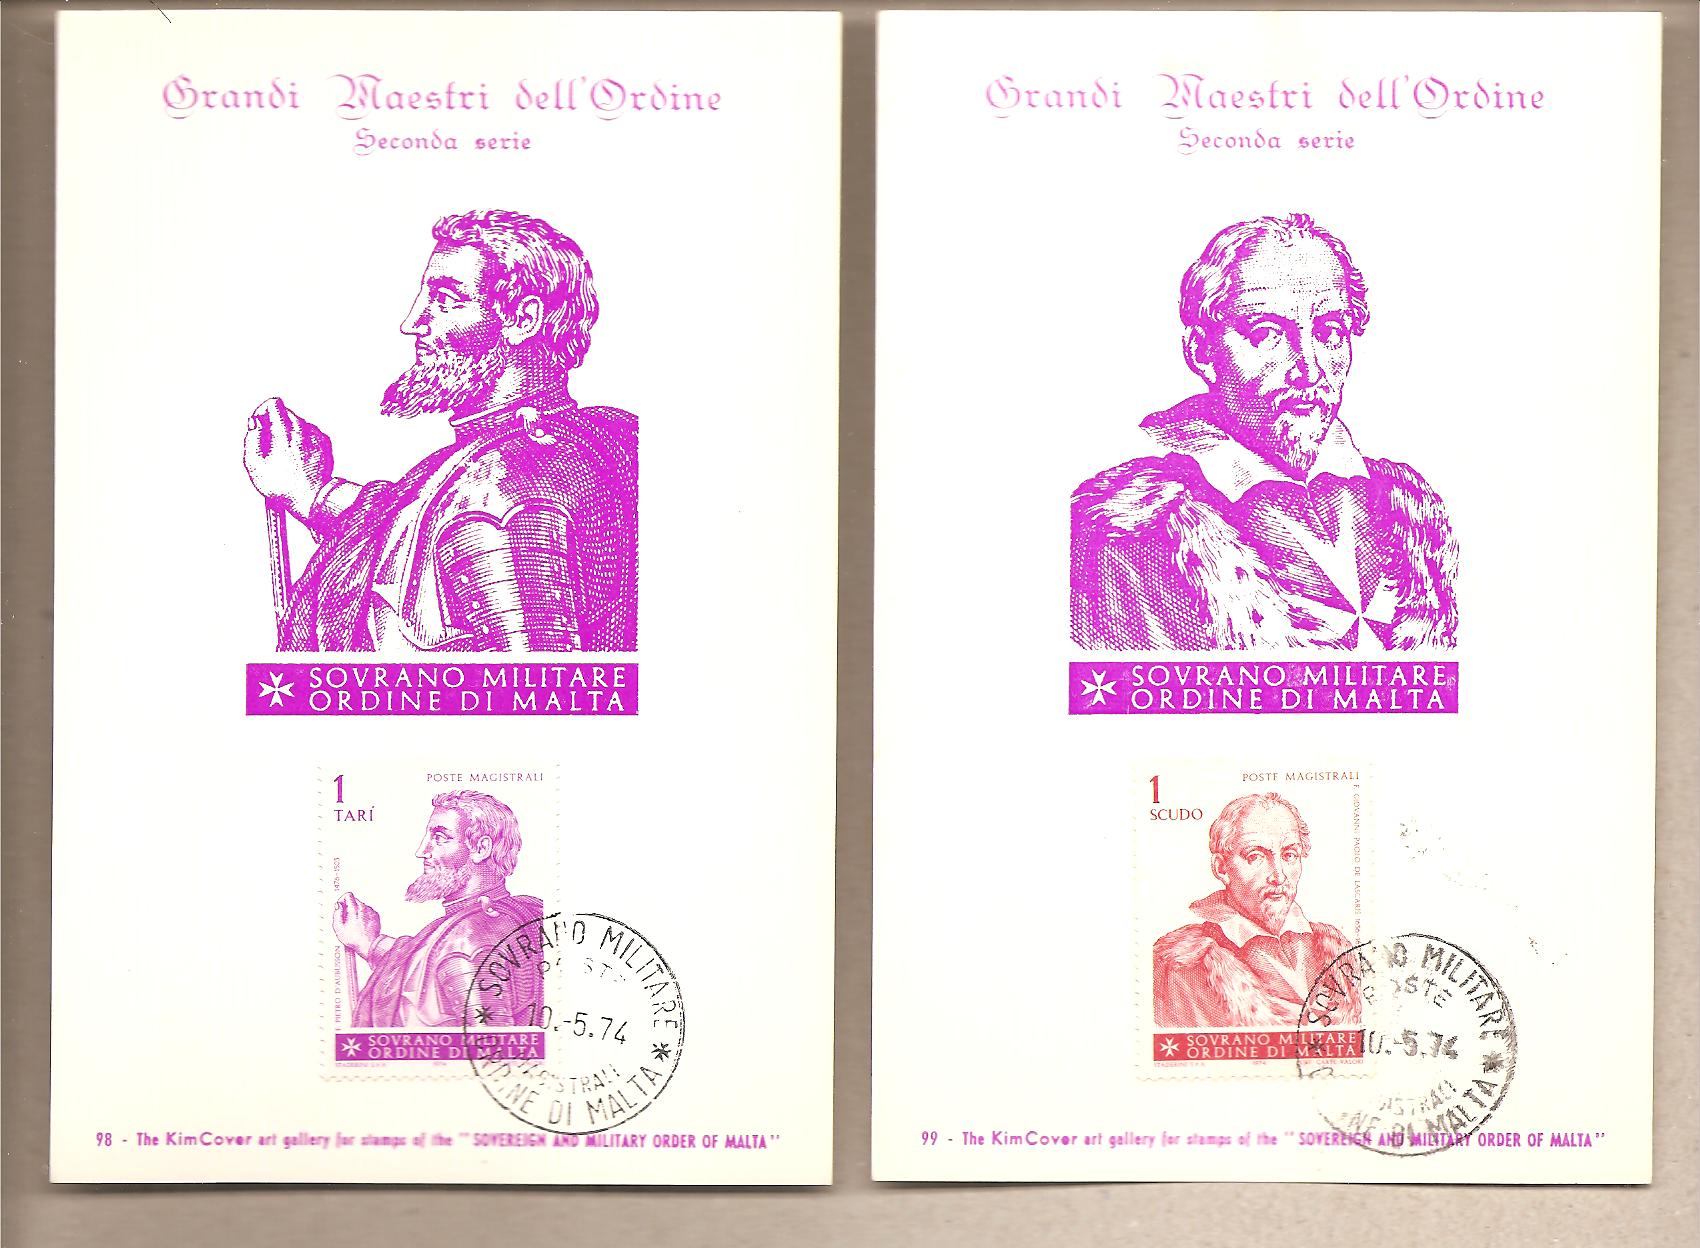 41624 - SMOM - 6 cartoline Maximum con serie completa: Grandi Maestri dell Ordine - 2 serie - 1974